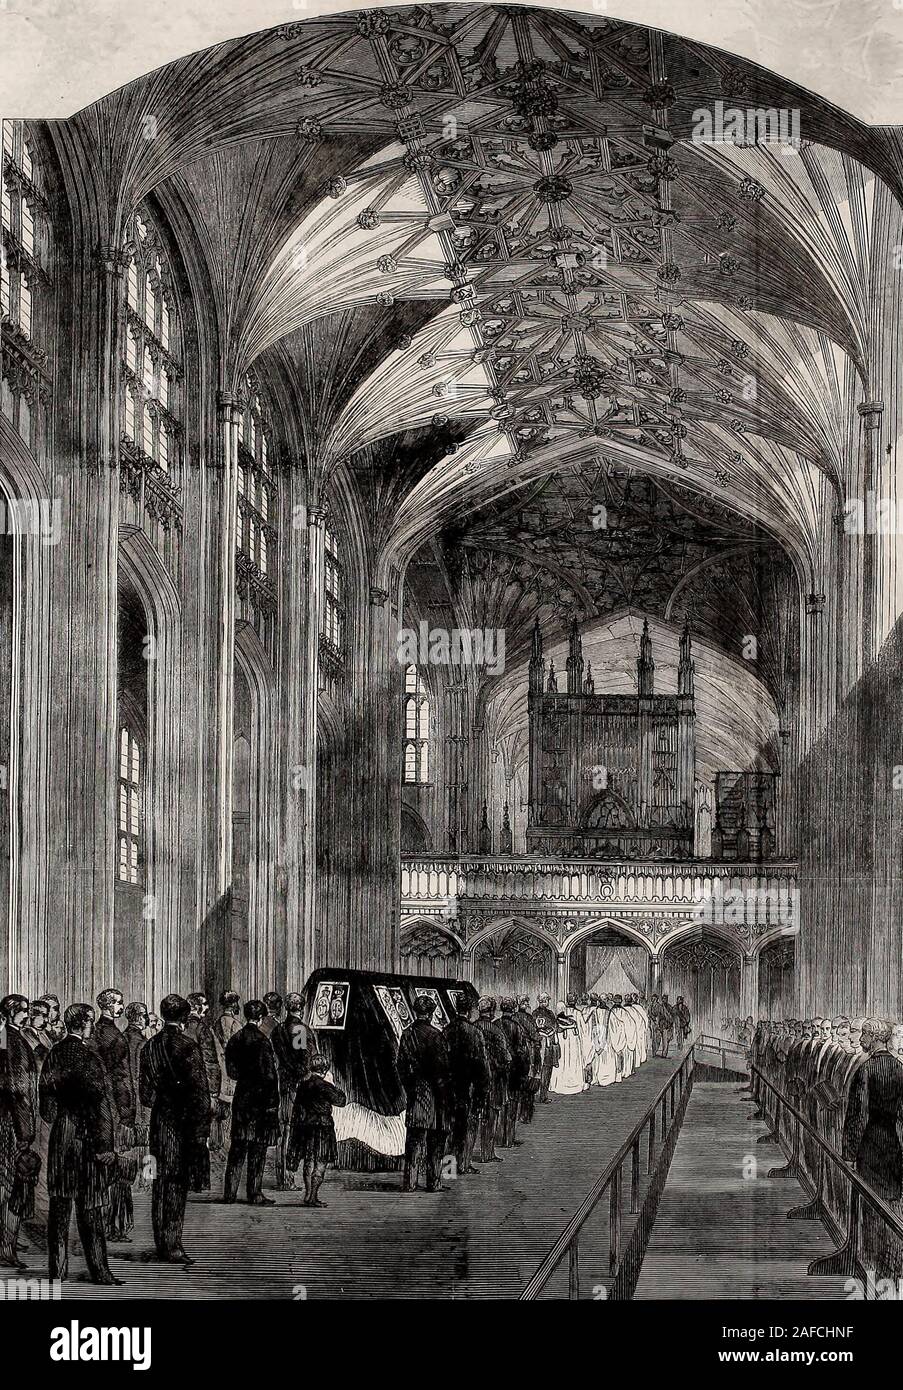 Die Beerdigung seiner späten Königliche Hoheit, Albert, Prinzgemahl - Der Trauerzug in das Kirchenschiff von St. George's Chapel, Dezember 1861 Stockfoto